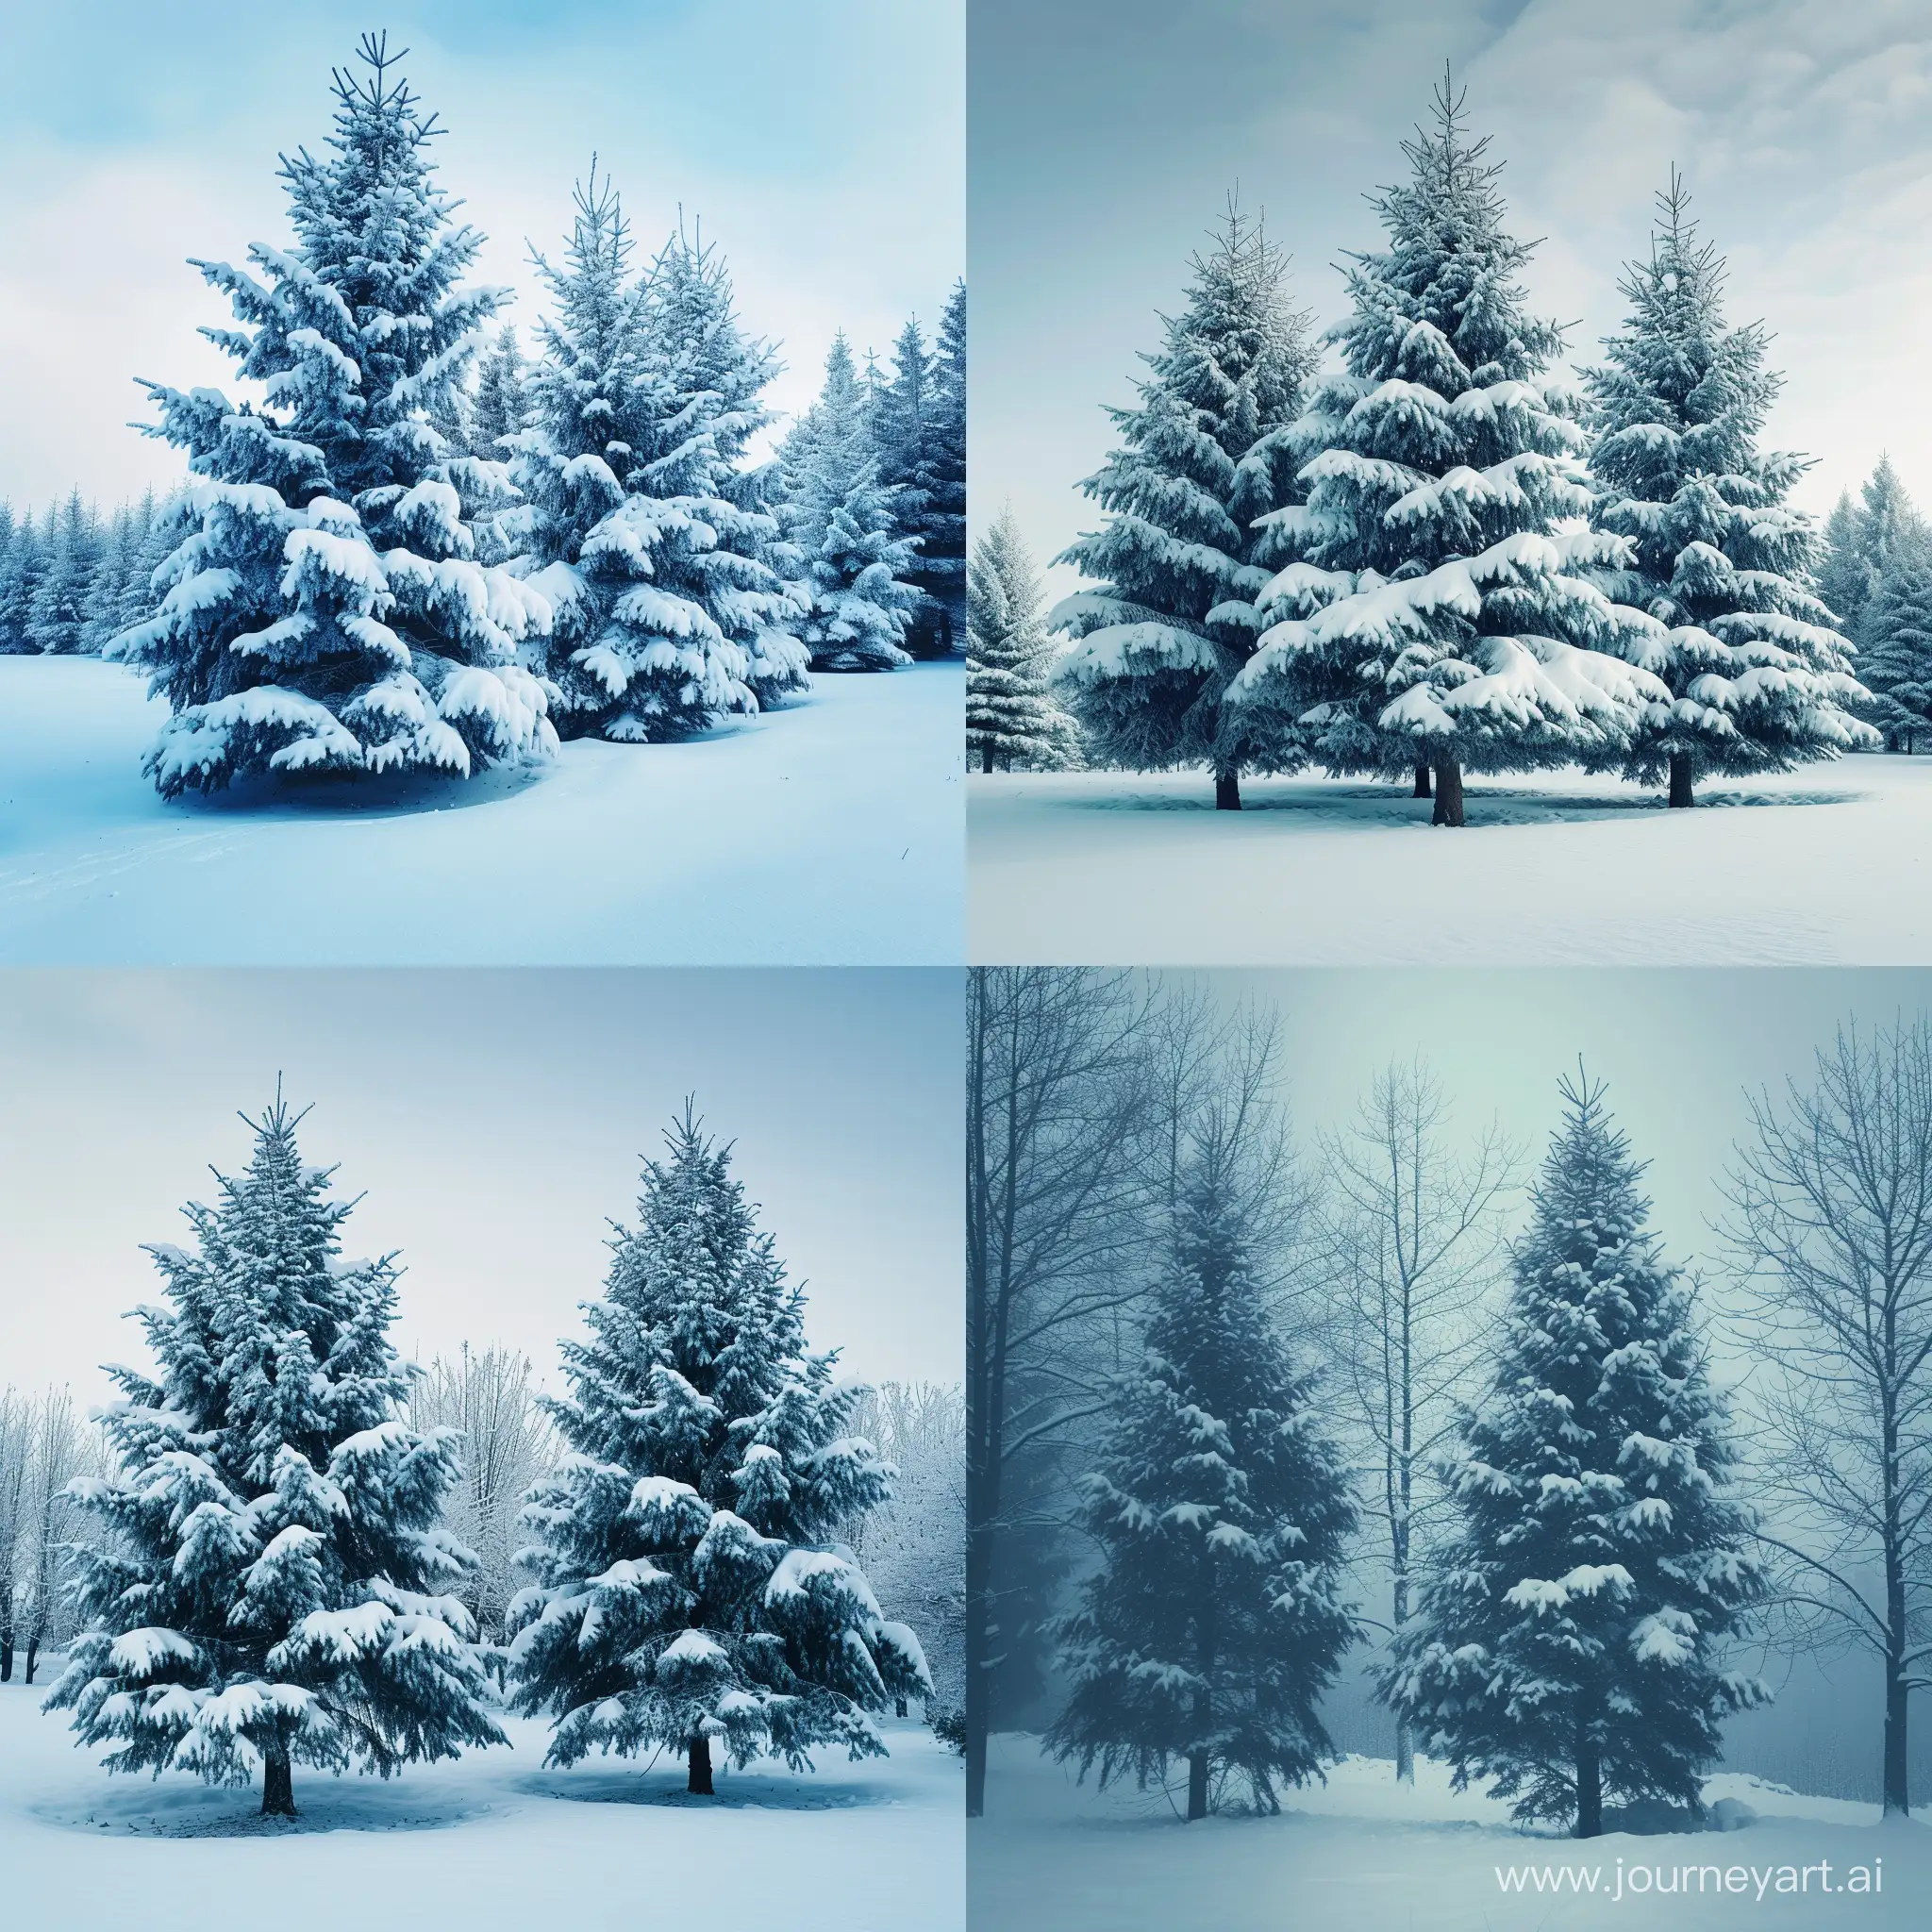  Рождество, день, зима, деревья в снегу, голубые тона, праздник